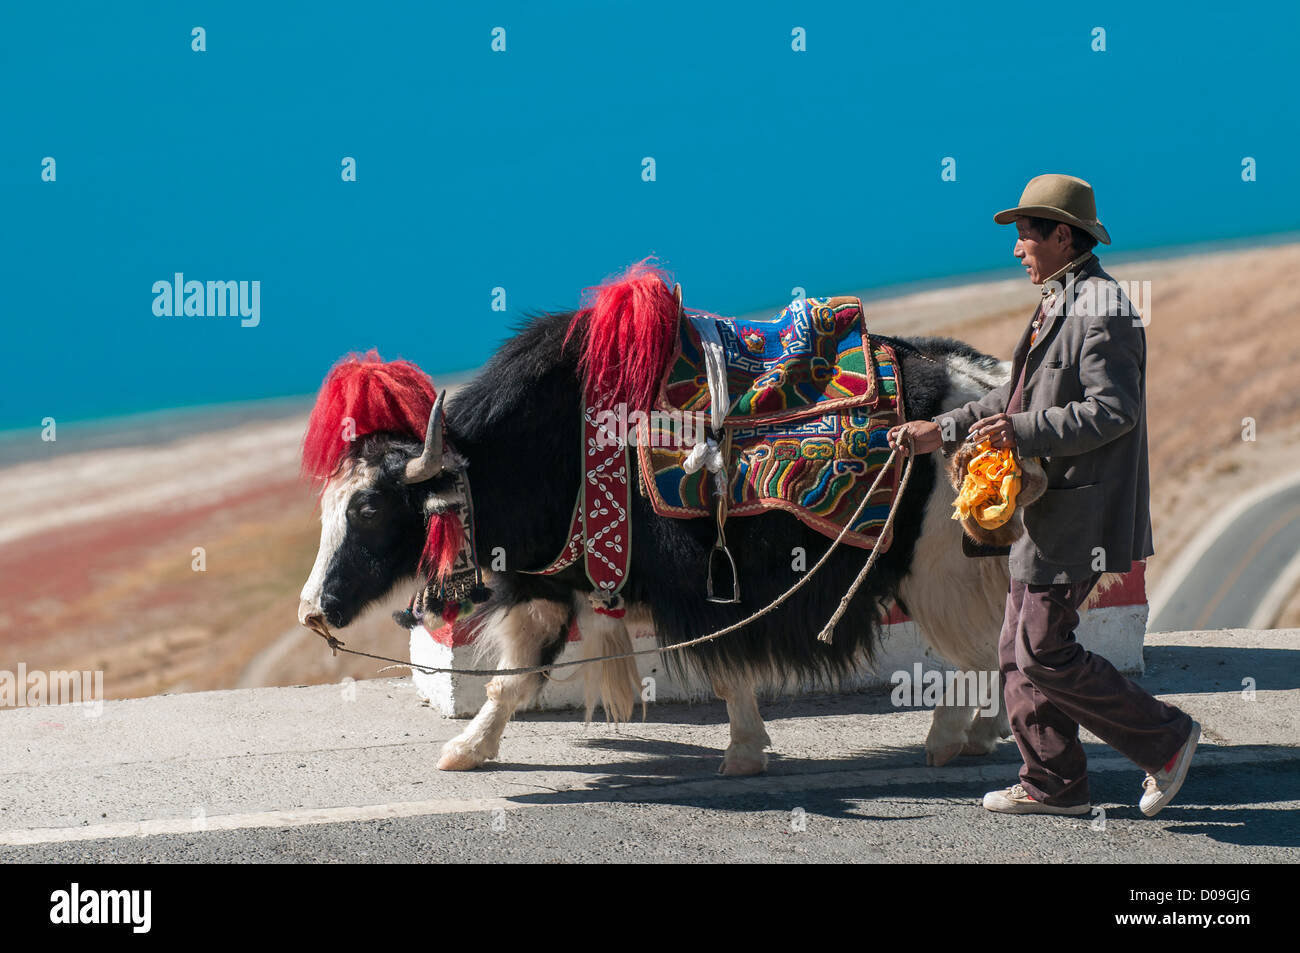 Decorado yak y propietario de la cámara espera llevar a los turistas a lo largo de lago Yamdrok, el Tíbet, China Foto de stock